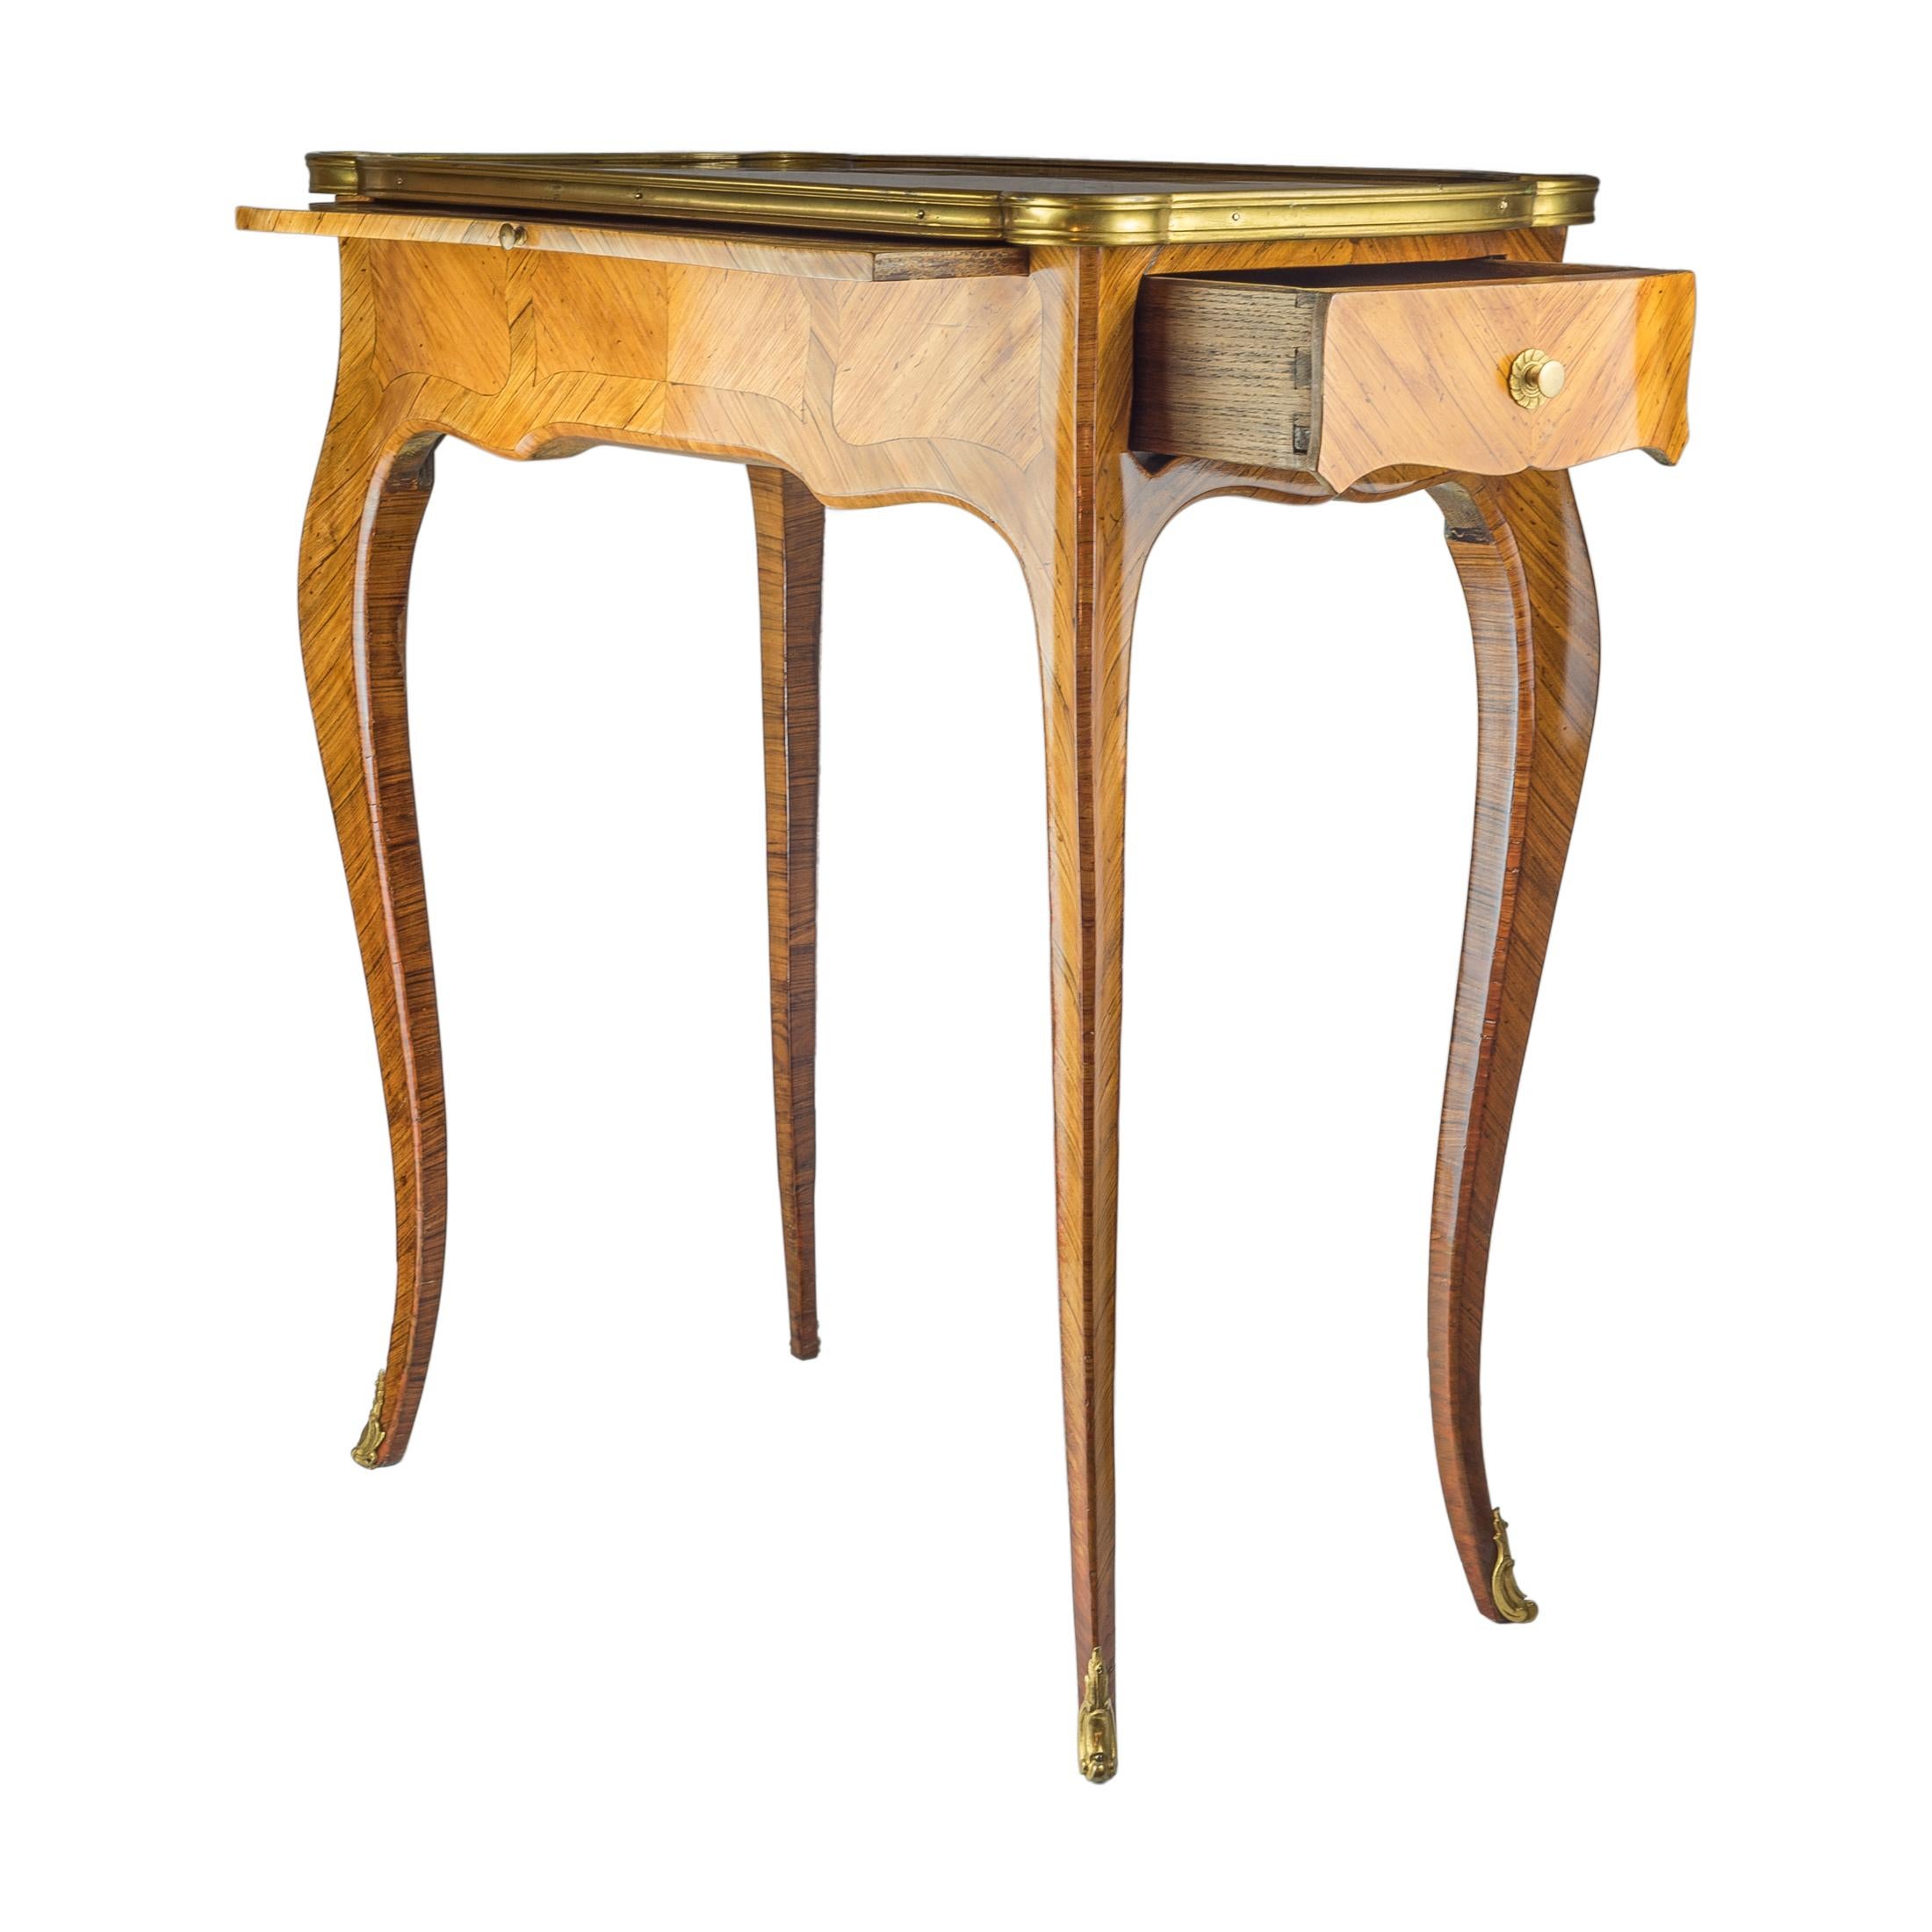 Une table rectangulaire à tiroirs en marqueterie française de bois de roi laqué de haute qualité.

Origine : Français
Date : fin du 19ème siècle
Dimension : H 27 1/2 x L 23 1/4 x P 14 pouces.